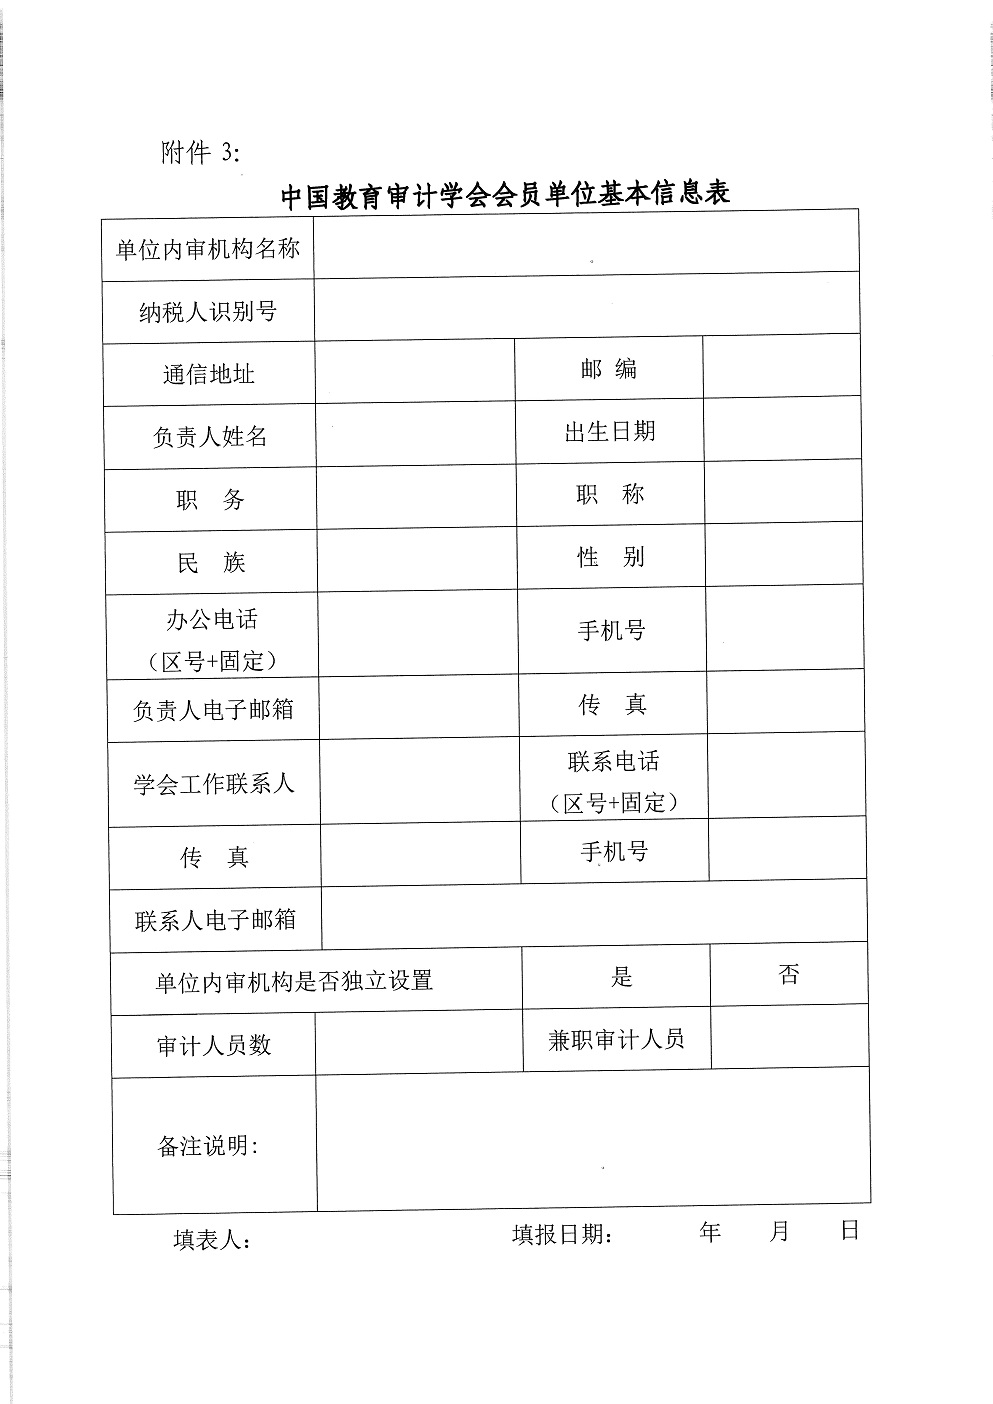 中教审通[2021]9号—中国教育审计学会关于发展新会员的通知_页面_6.jpg